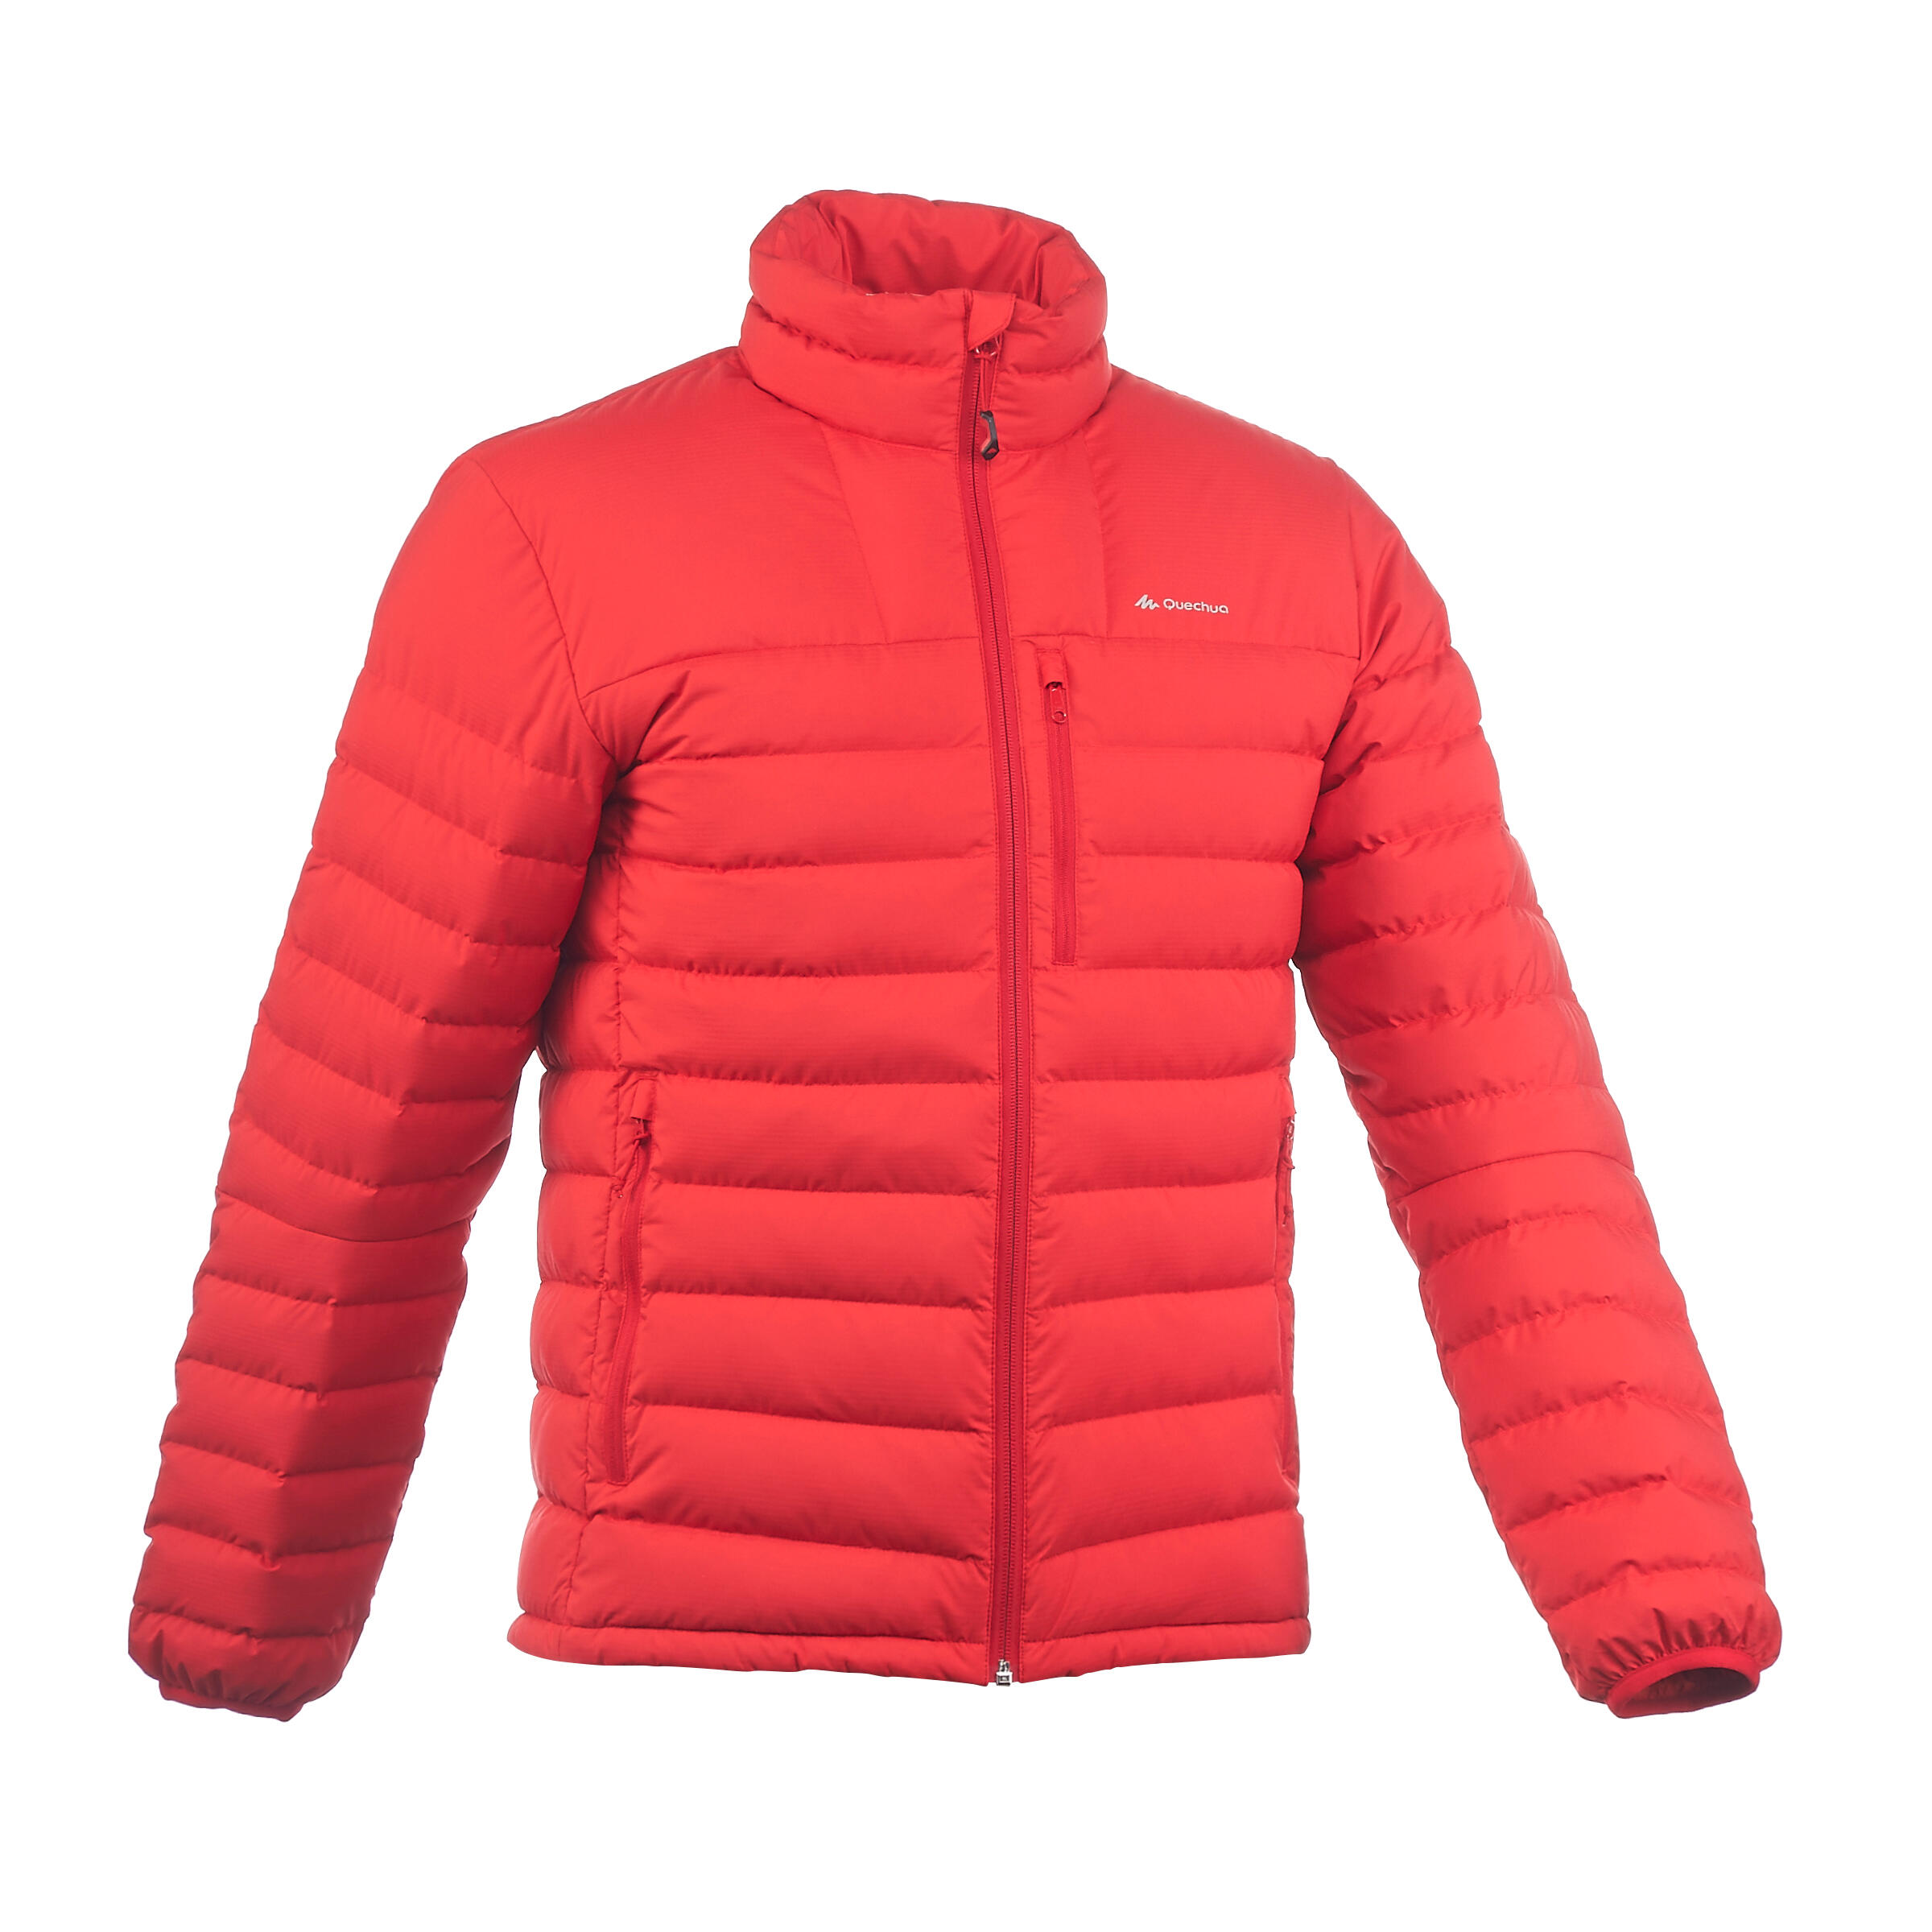 FORCLAZ Men's X-Warm red trekking down jacket